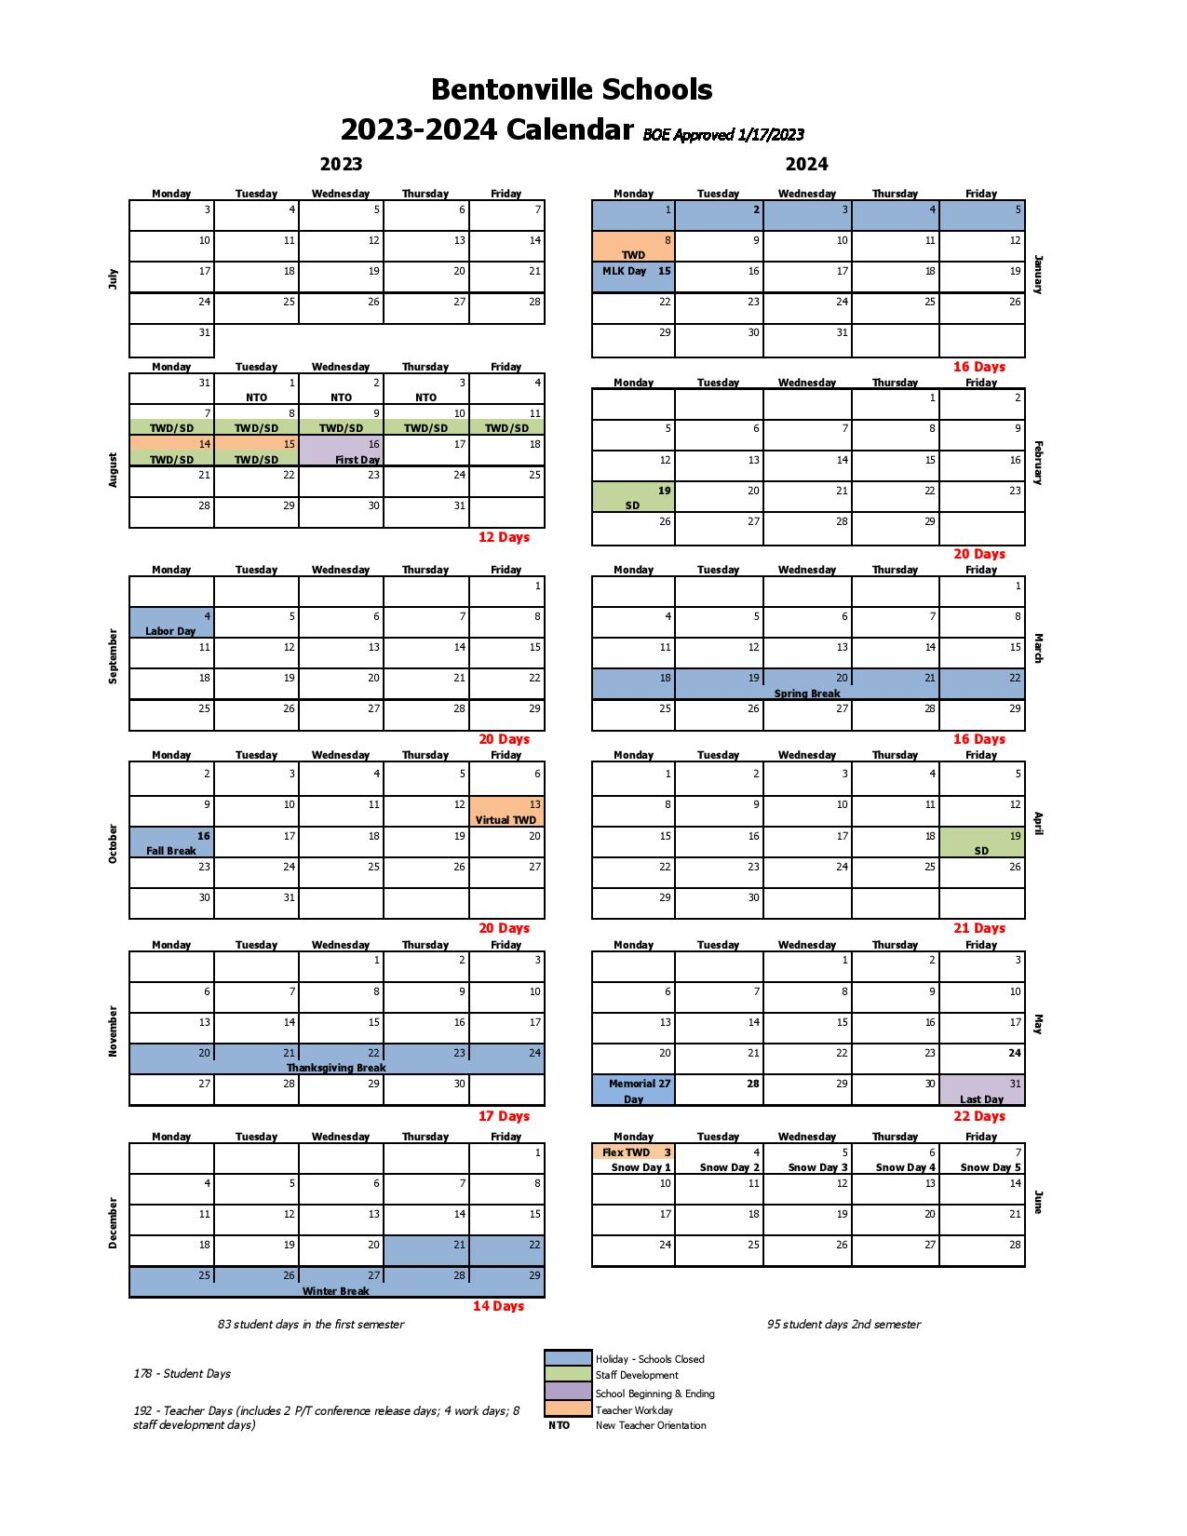 Bentonville Public Schools Calendar 2024 (Holiday Breaks)